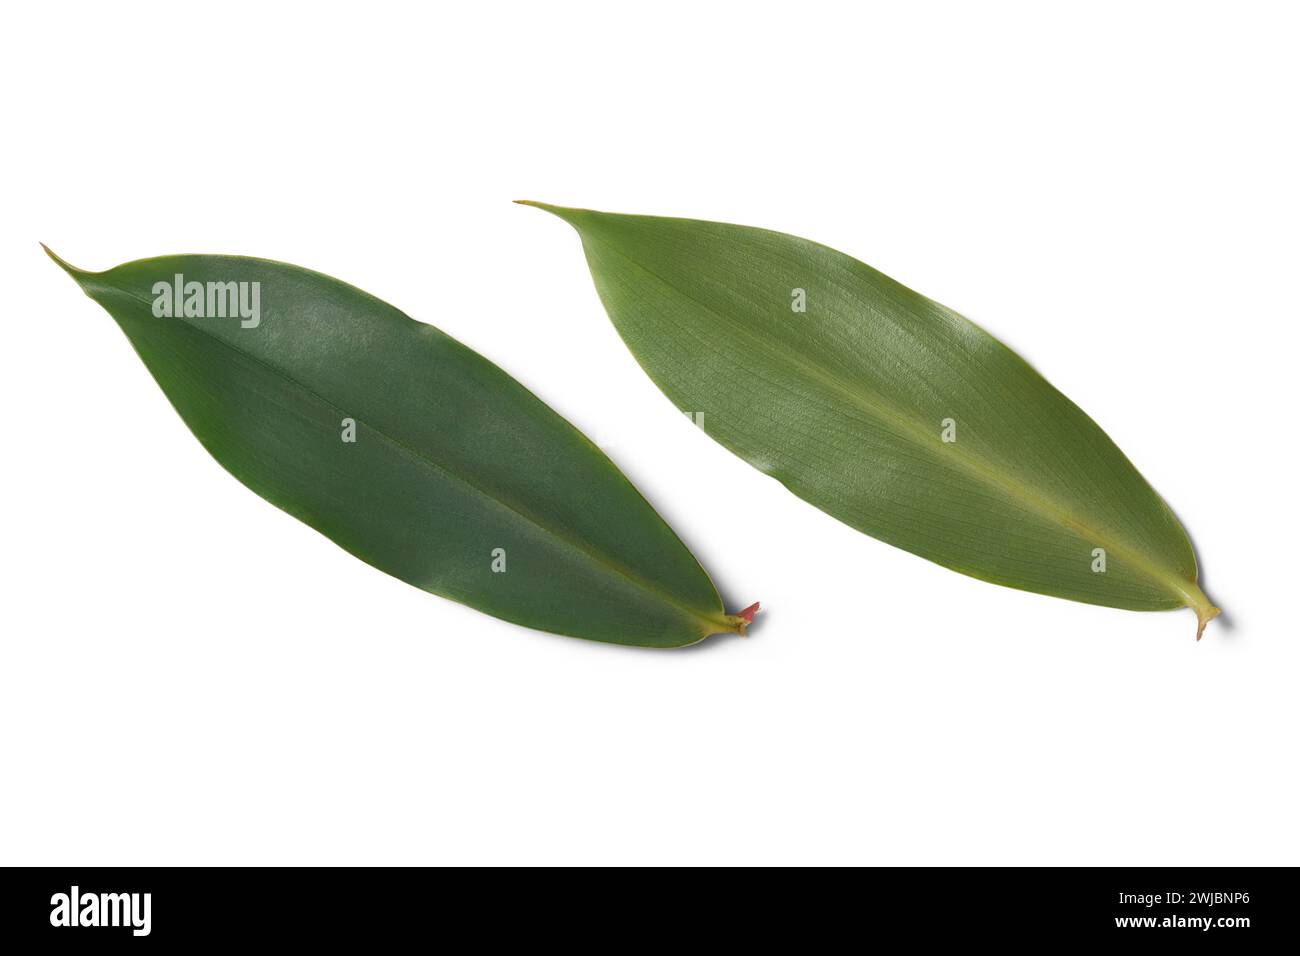 feuilles de thébu, costus speciosus, couramment trouvé au sri lanka et largement utilisé dans la médecine ayurvédique, les feuilles sont bénéfiques pour contrôler la glycémie Banque D'Images